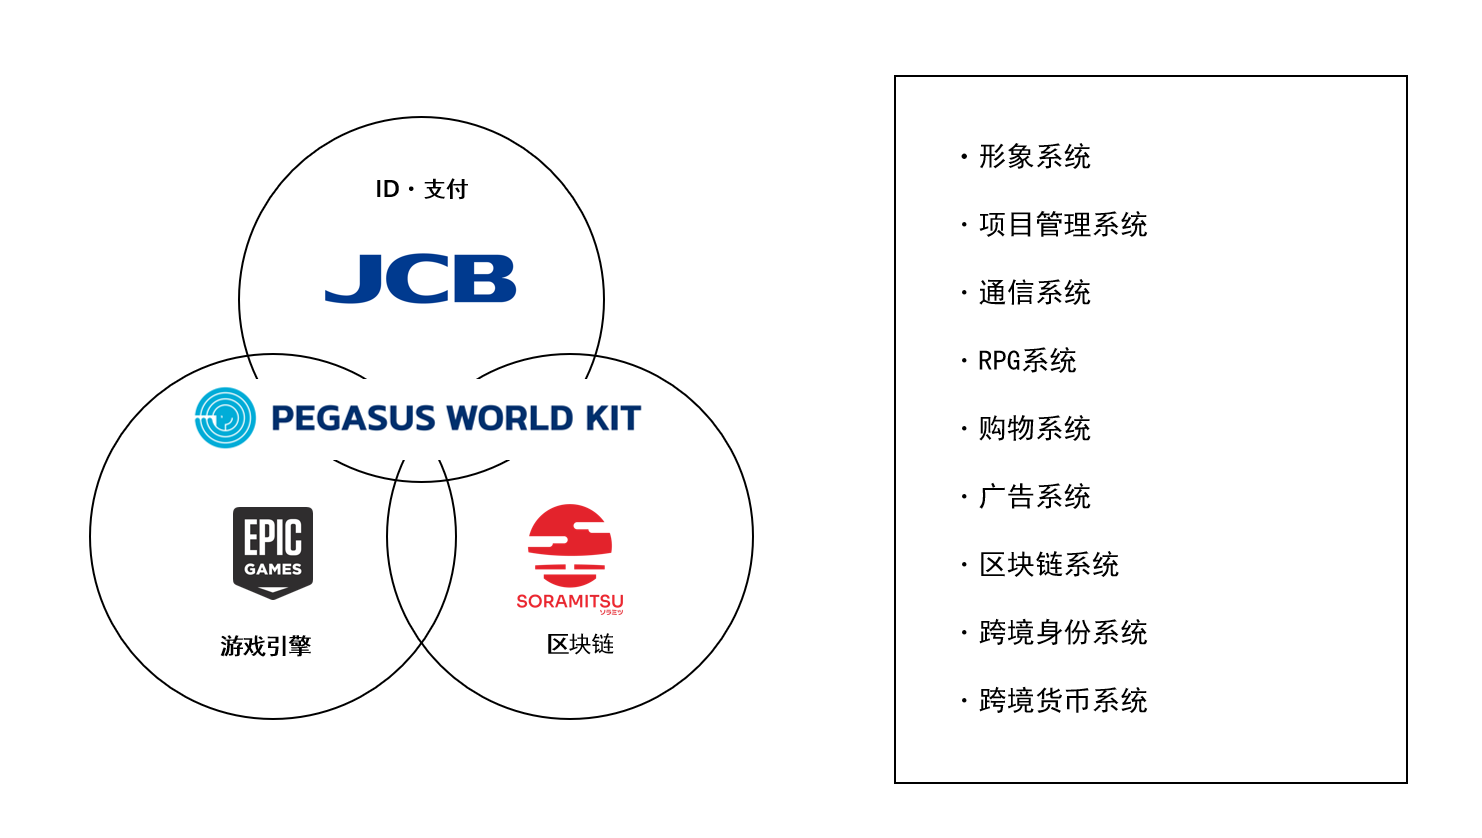 田畑端领军JP Games发表网络空间服务套件“PEGASUS WORLD KIT”,全日空已开始使用